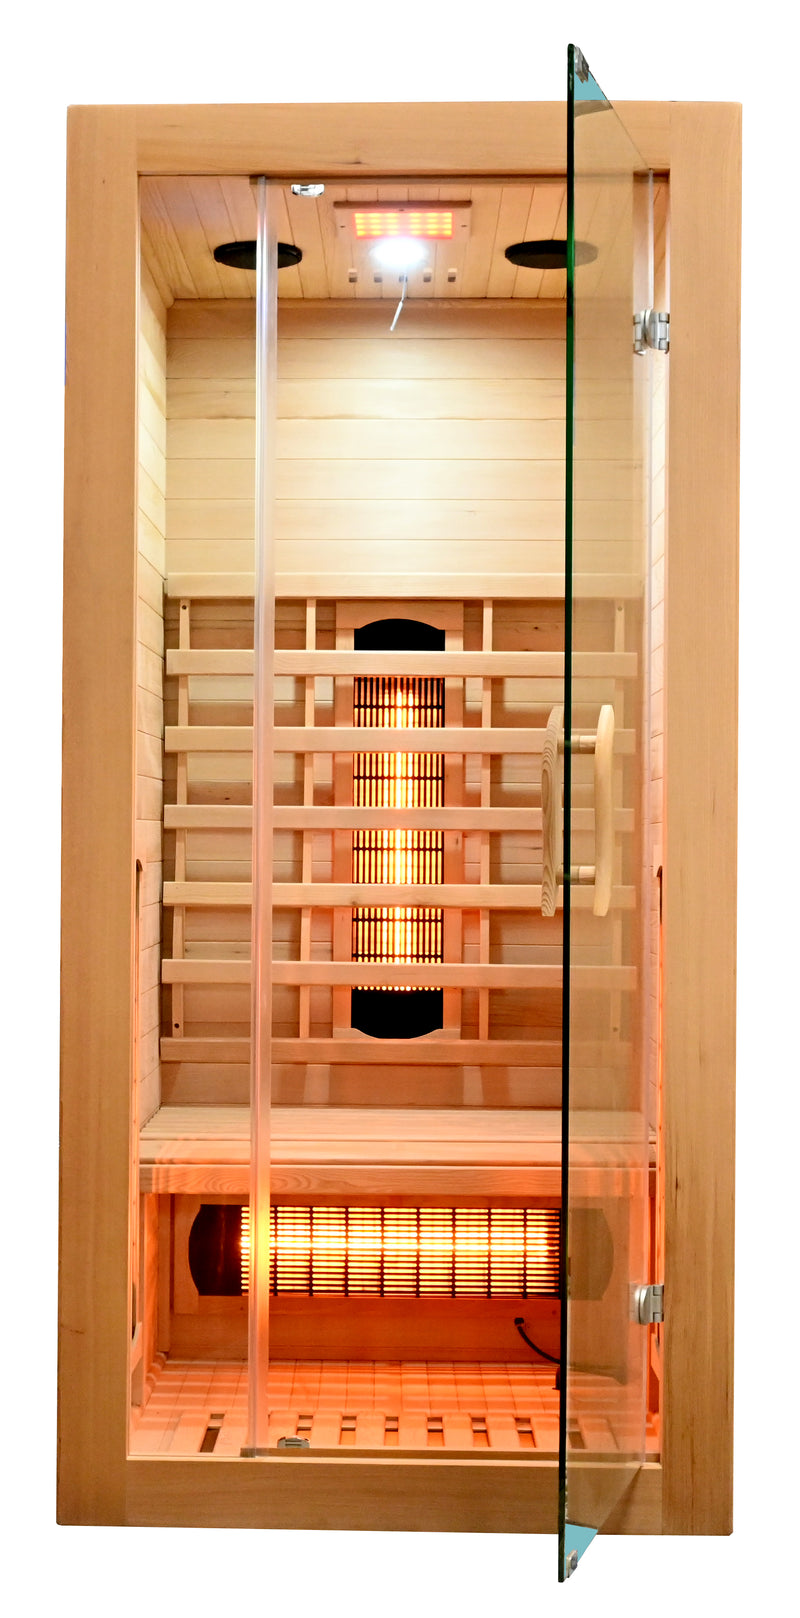 Vermelden discretie klep Infrarood sauna voor 1 persoon Malmö 90x90x190cm 1320 Watt